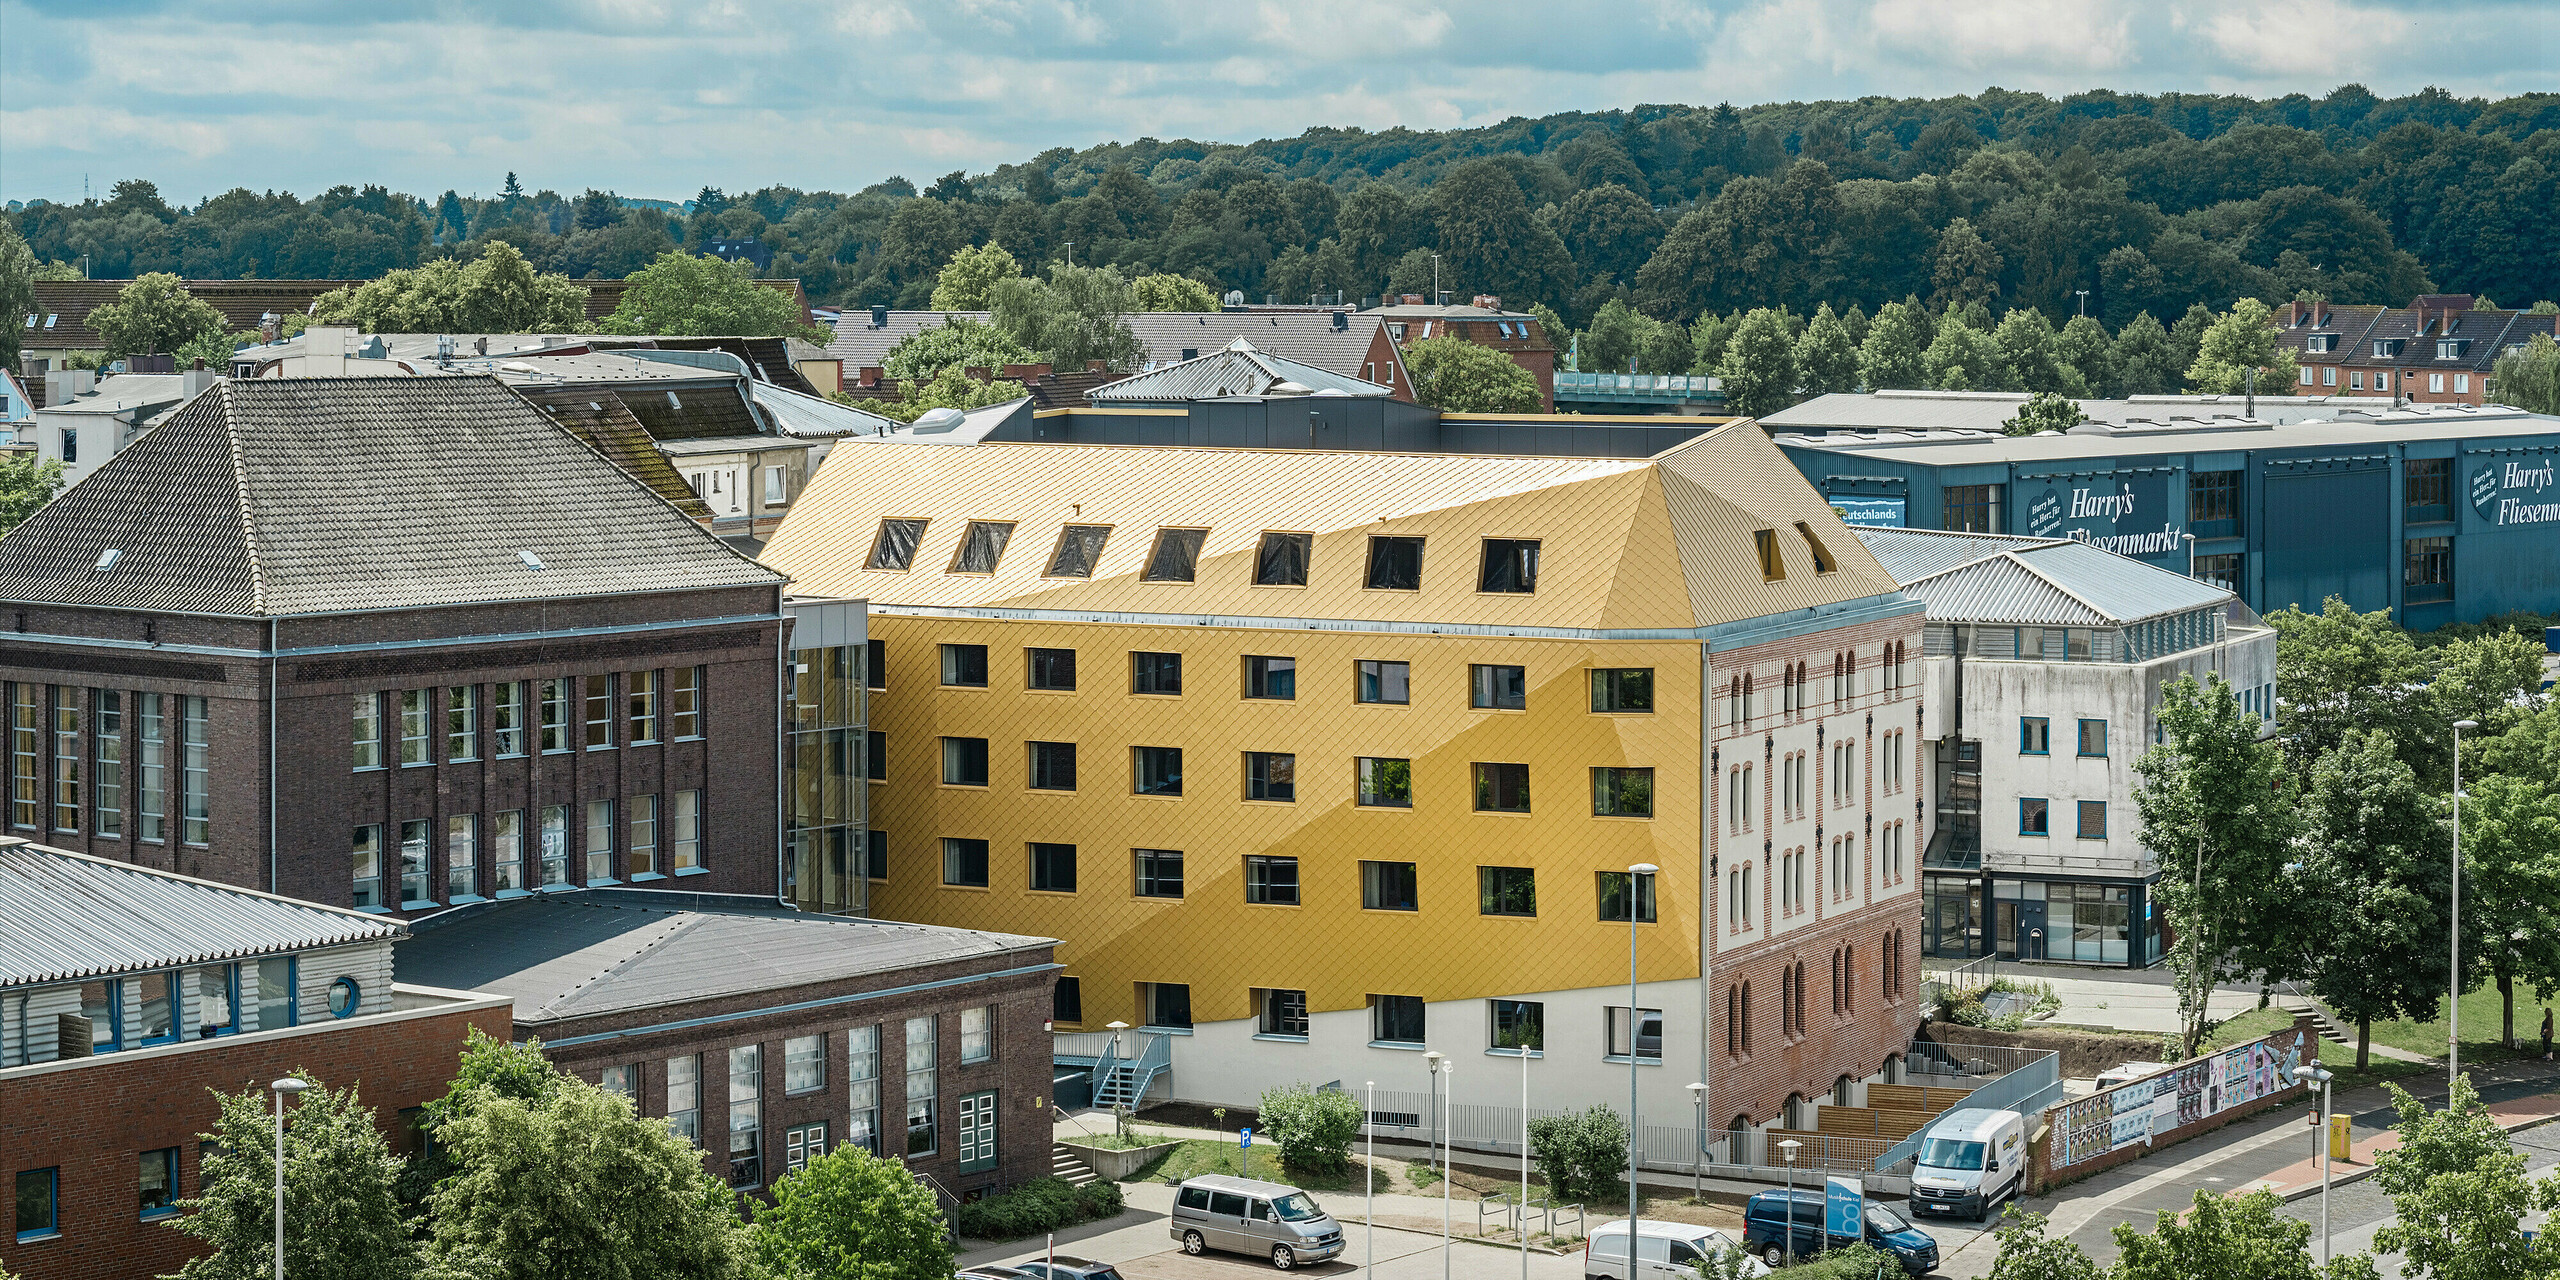 Blick aus der Ferne auf "The Station" in Kiel mit schönen Stadtpanorama im Hintergrund. Das Studentenwohnheim sticht hervor durch die auffällige Aluminiumfassade sowie das Dach bestehend aus PREFA Dach- und Wandrauten 29 × 29 in Mayagold.